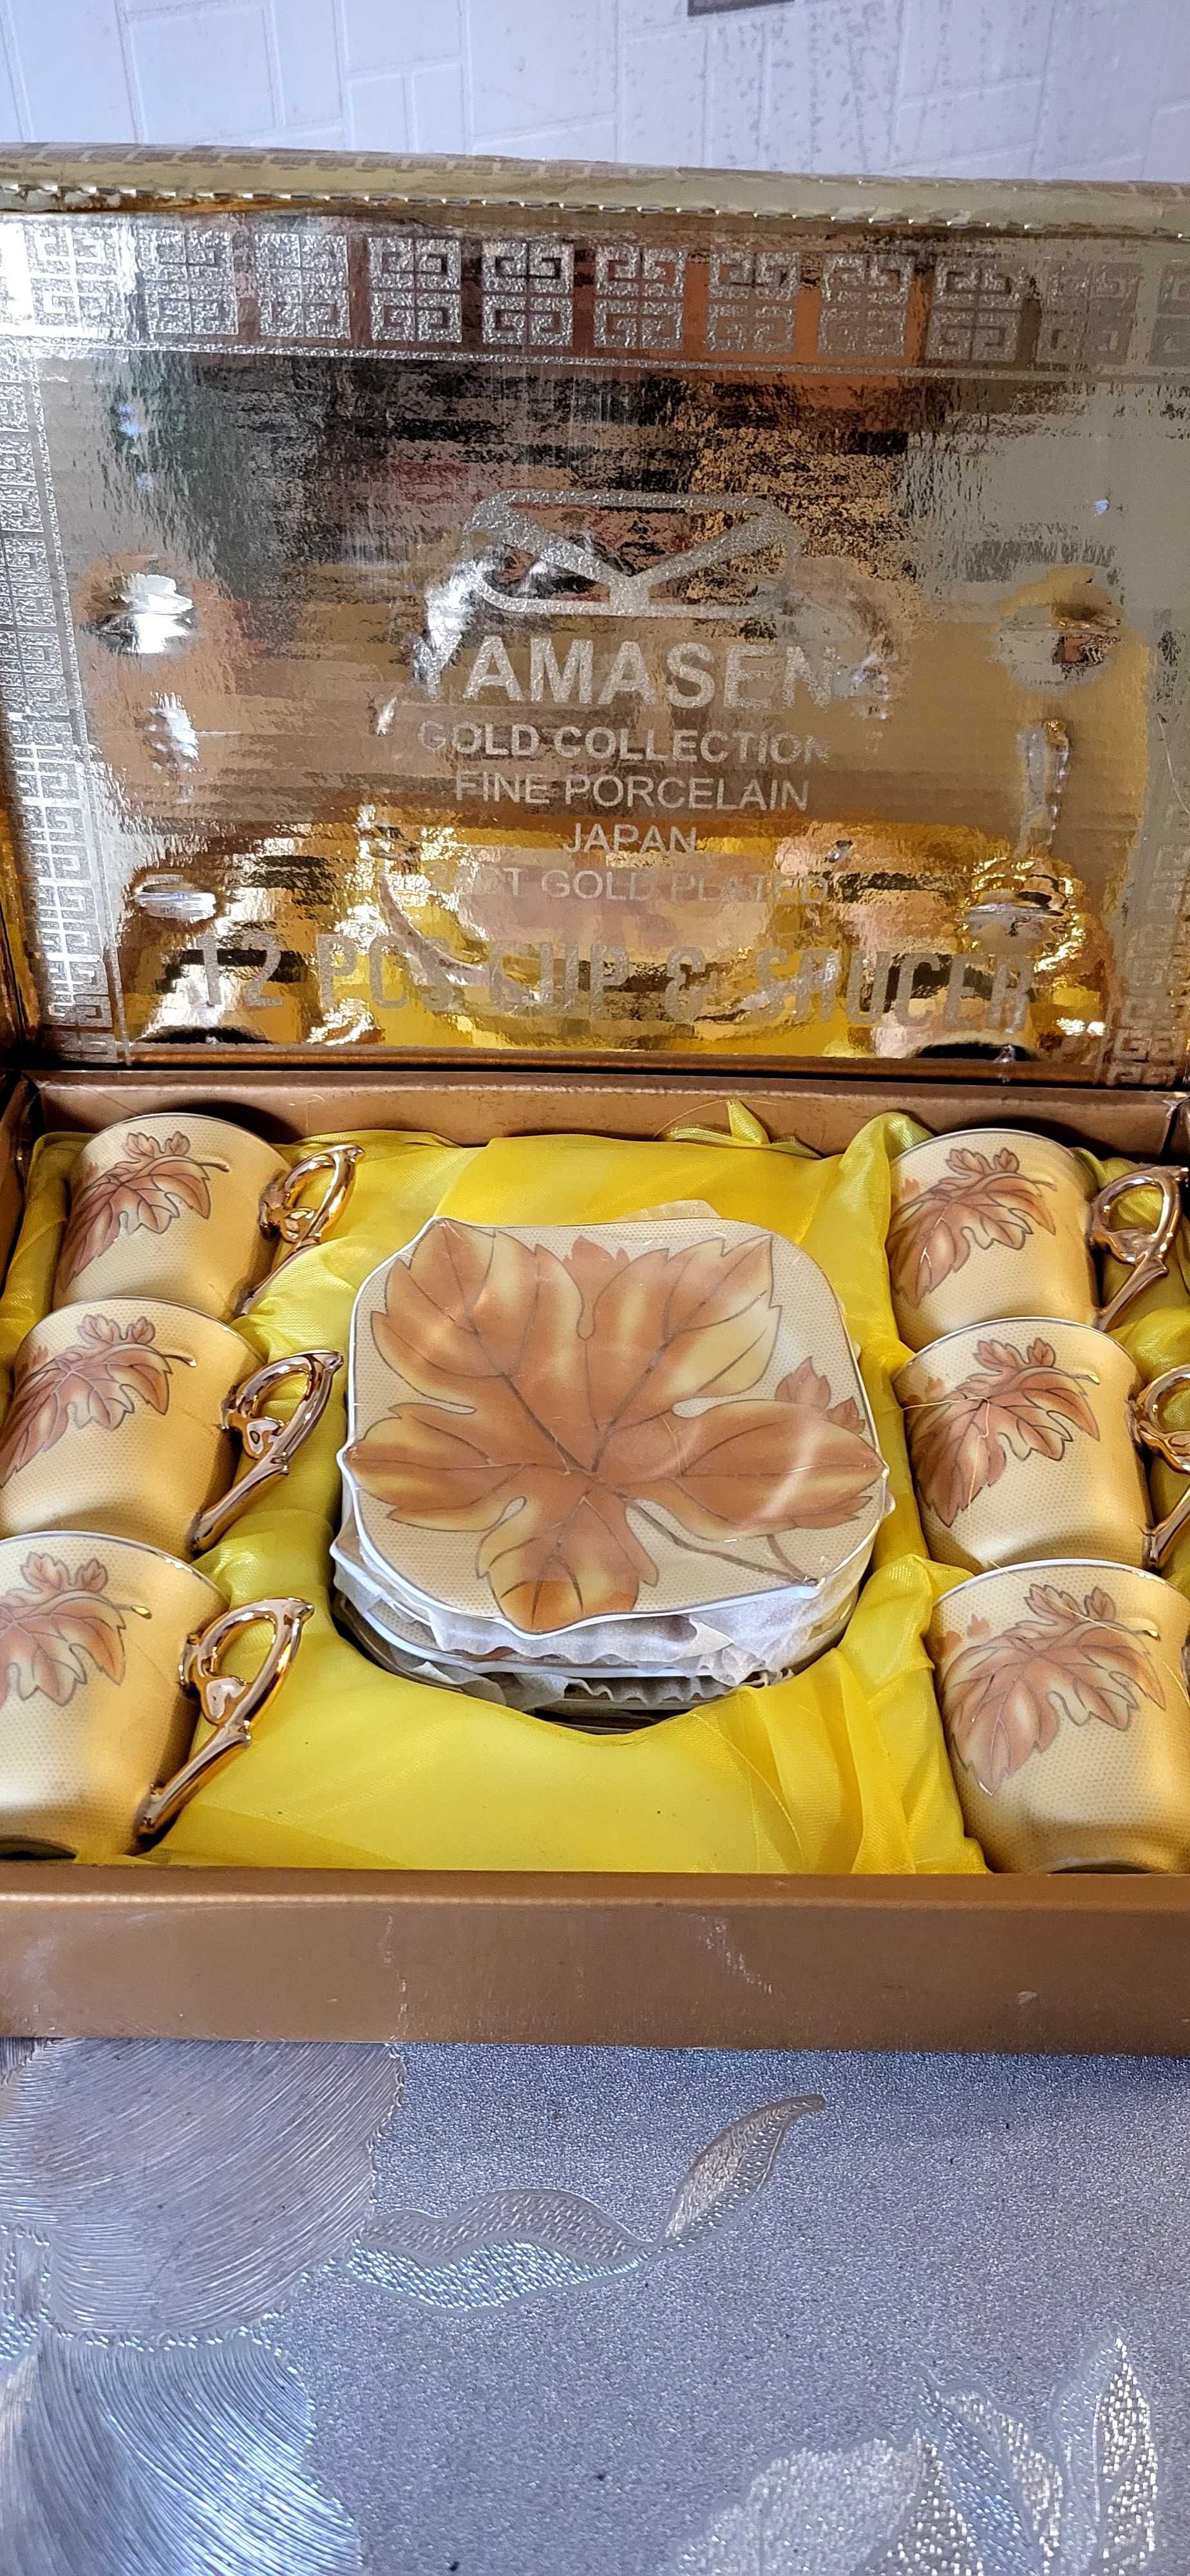 Кофейный набор из 6 чашек Yamasen gold collection